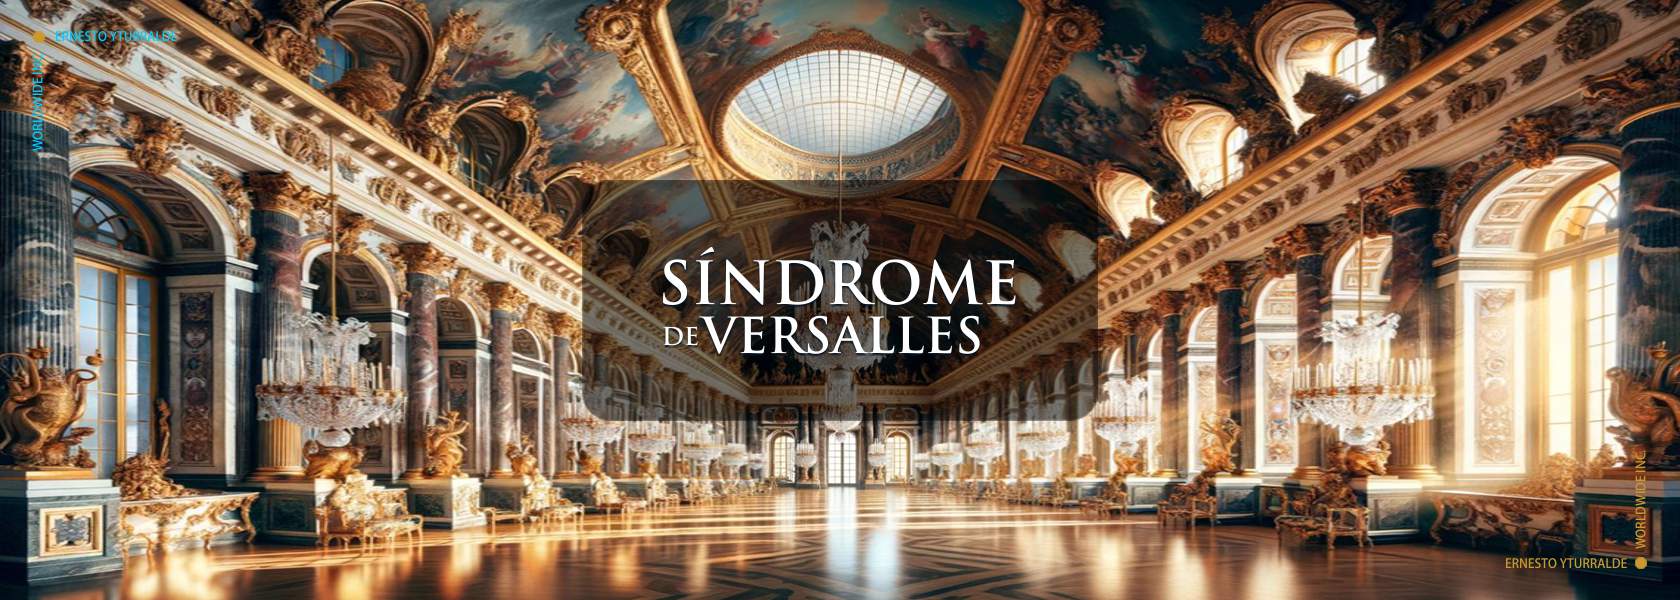 El Síndrome de Versalles por Ernesto Yturralde